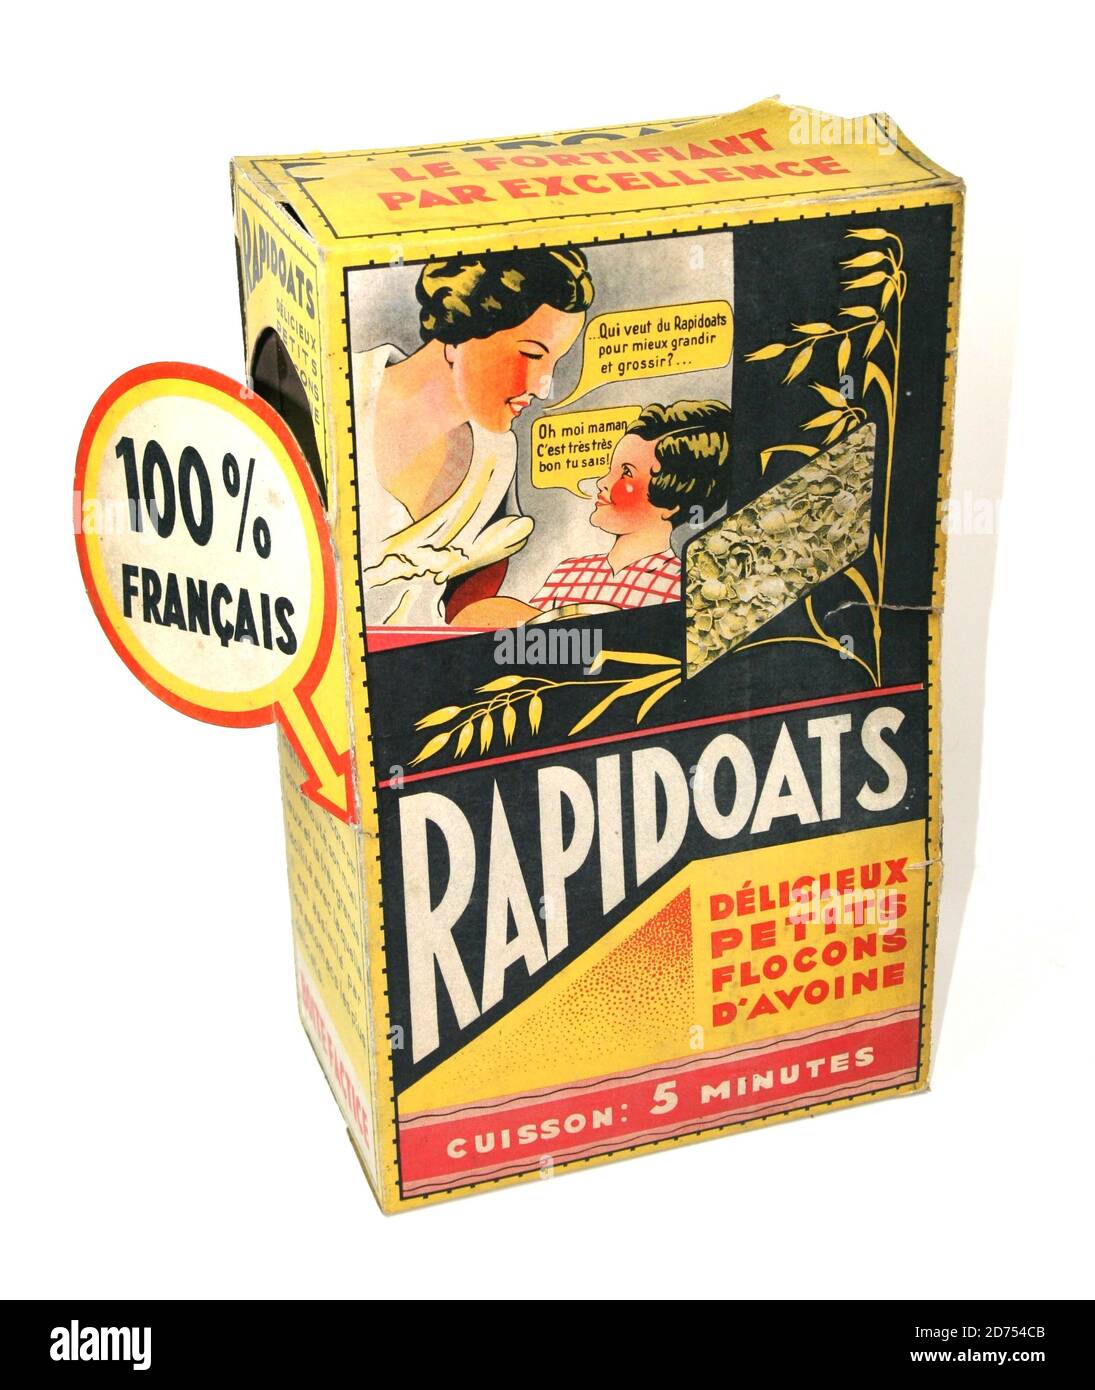 Boite presentor factice de flocons d avoine Rapidavoine vers 1945 Banque D'Images